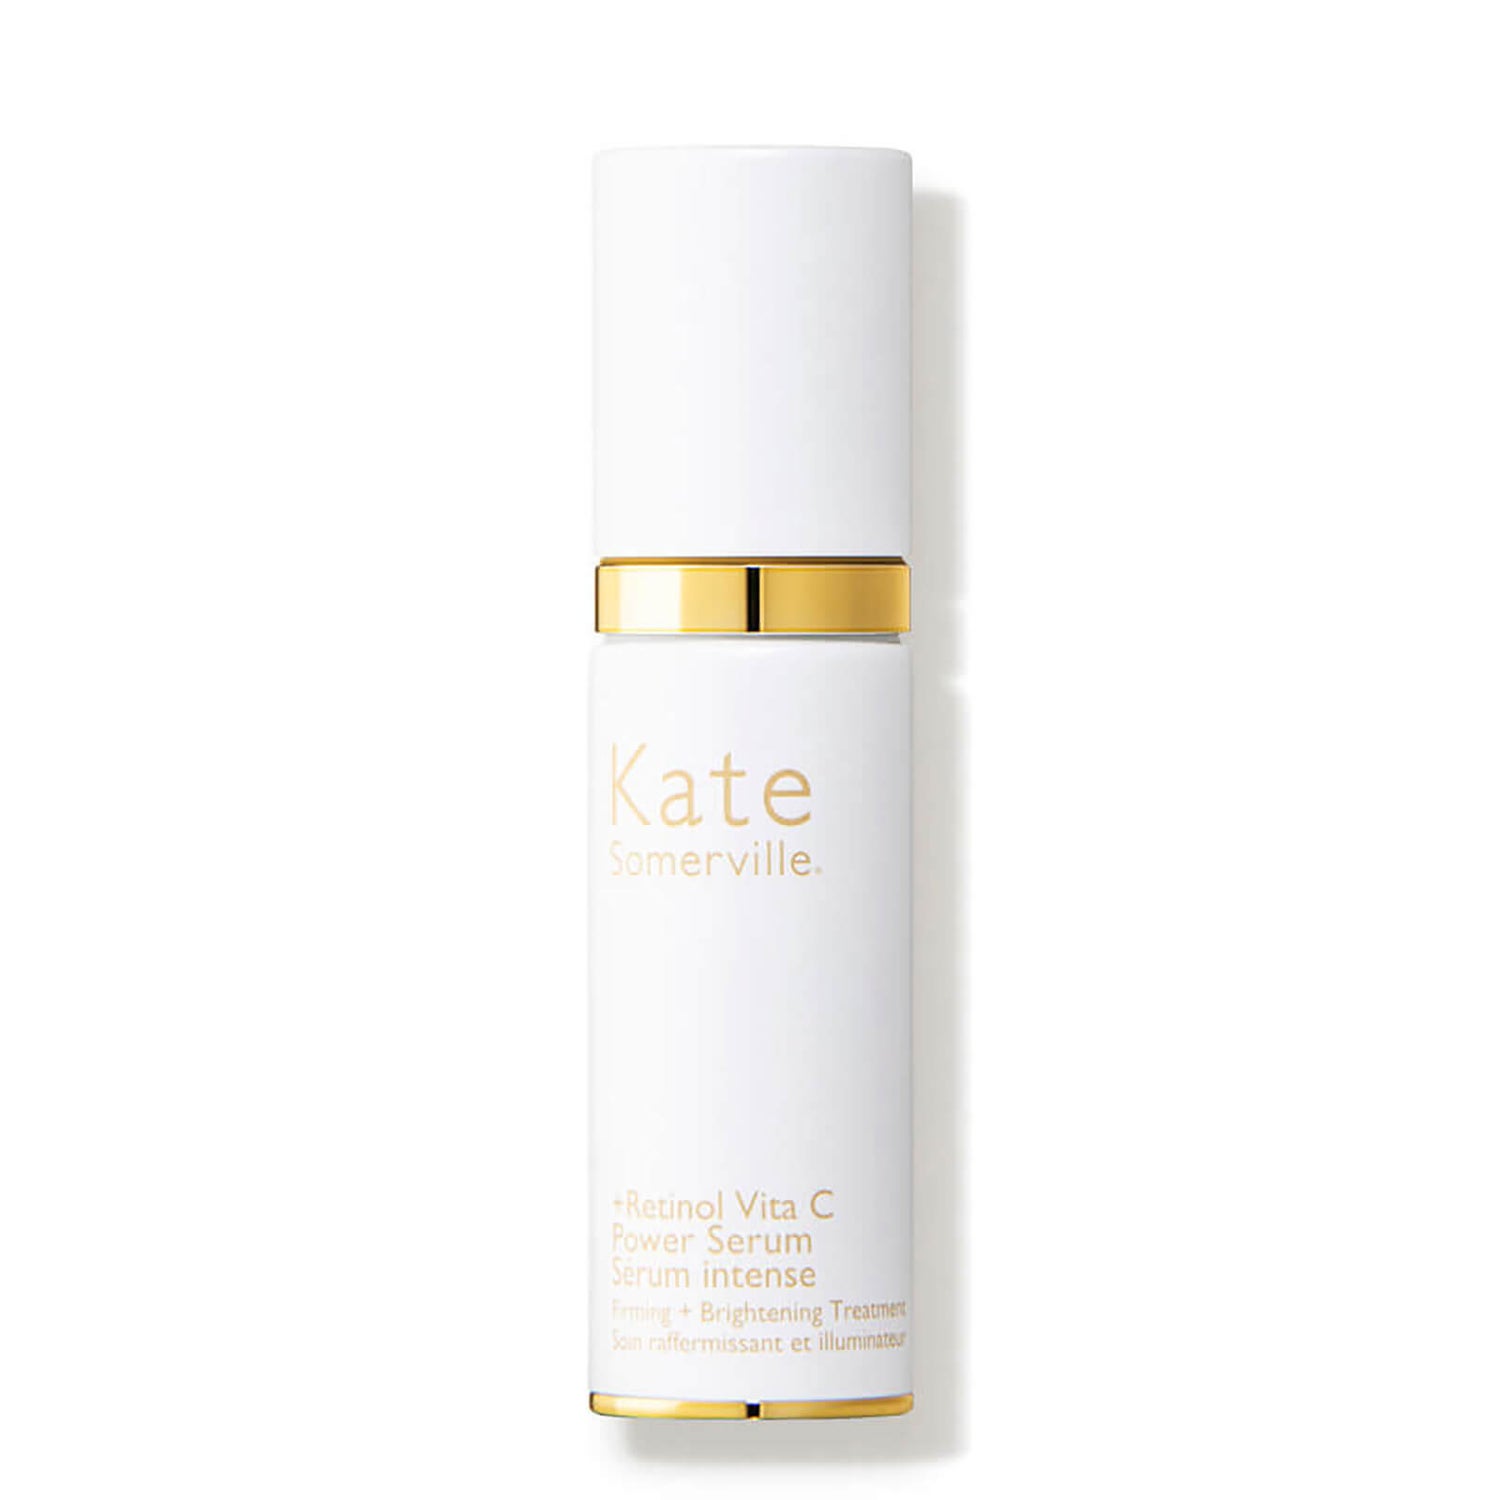 Kate Somerville Retinol Vita C Power Serum Firming Brightening Treatment (1 fl. oz.)